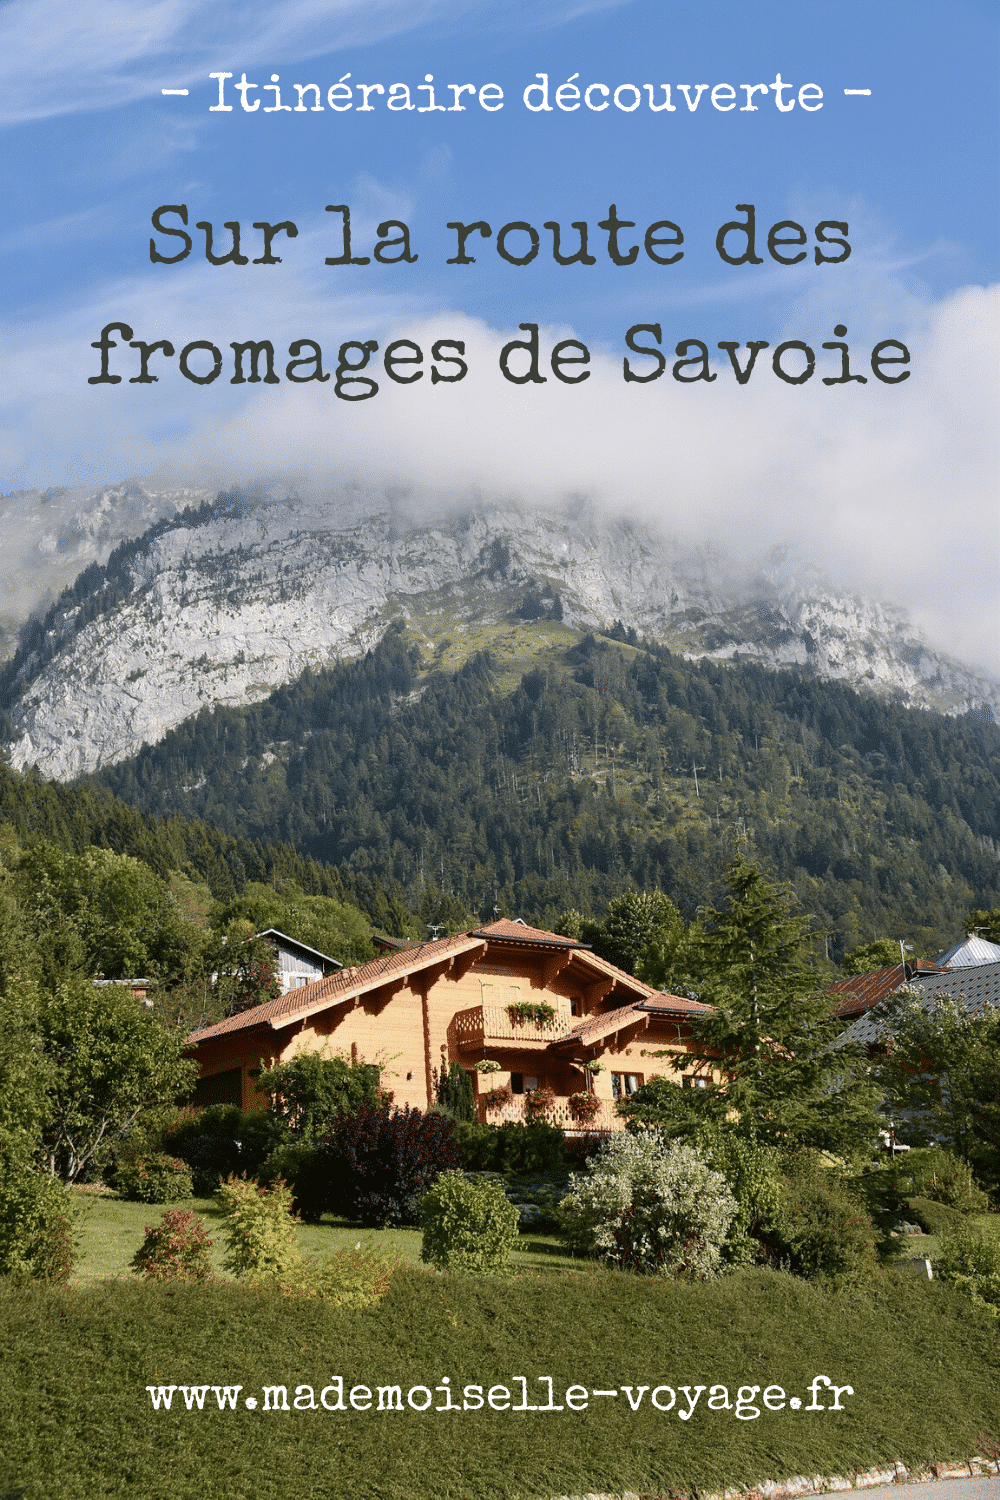 France - Savoie - itinéraire - conseil - voyage - route des fromages 